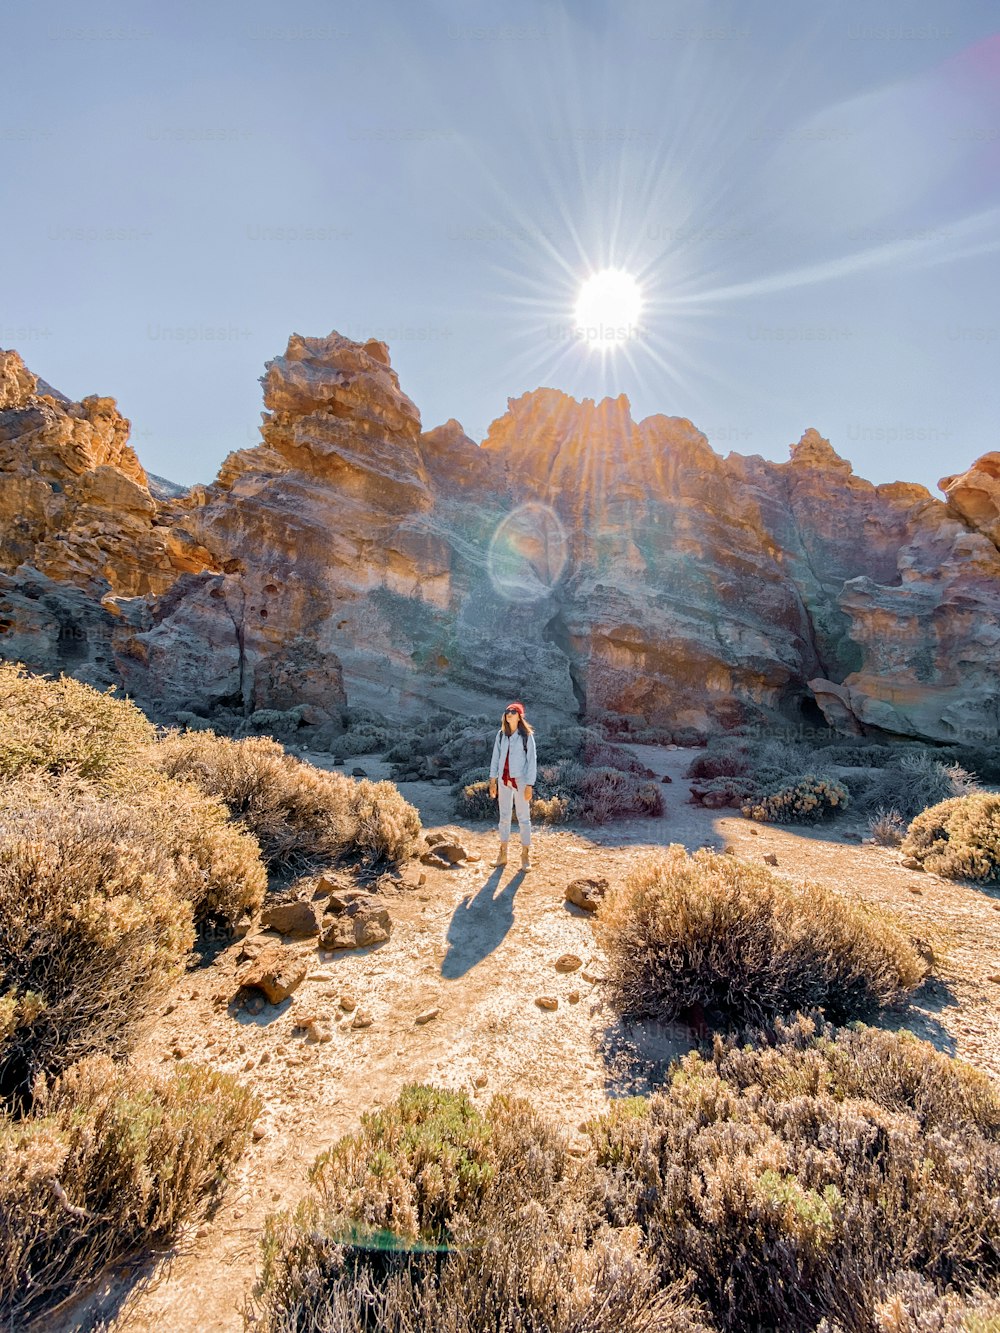 Paysage d’un beau rocher sur la vallée du désert avec une femme voyageant. Image réalisée sur un téléphone portable